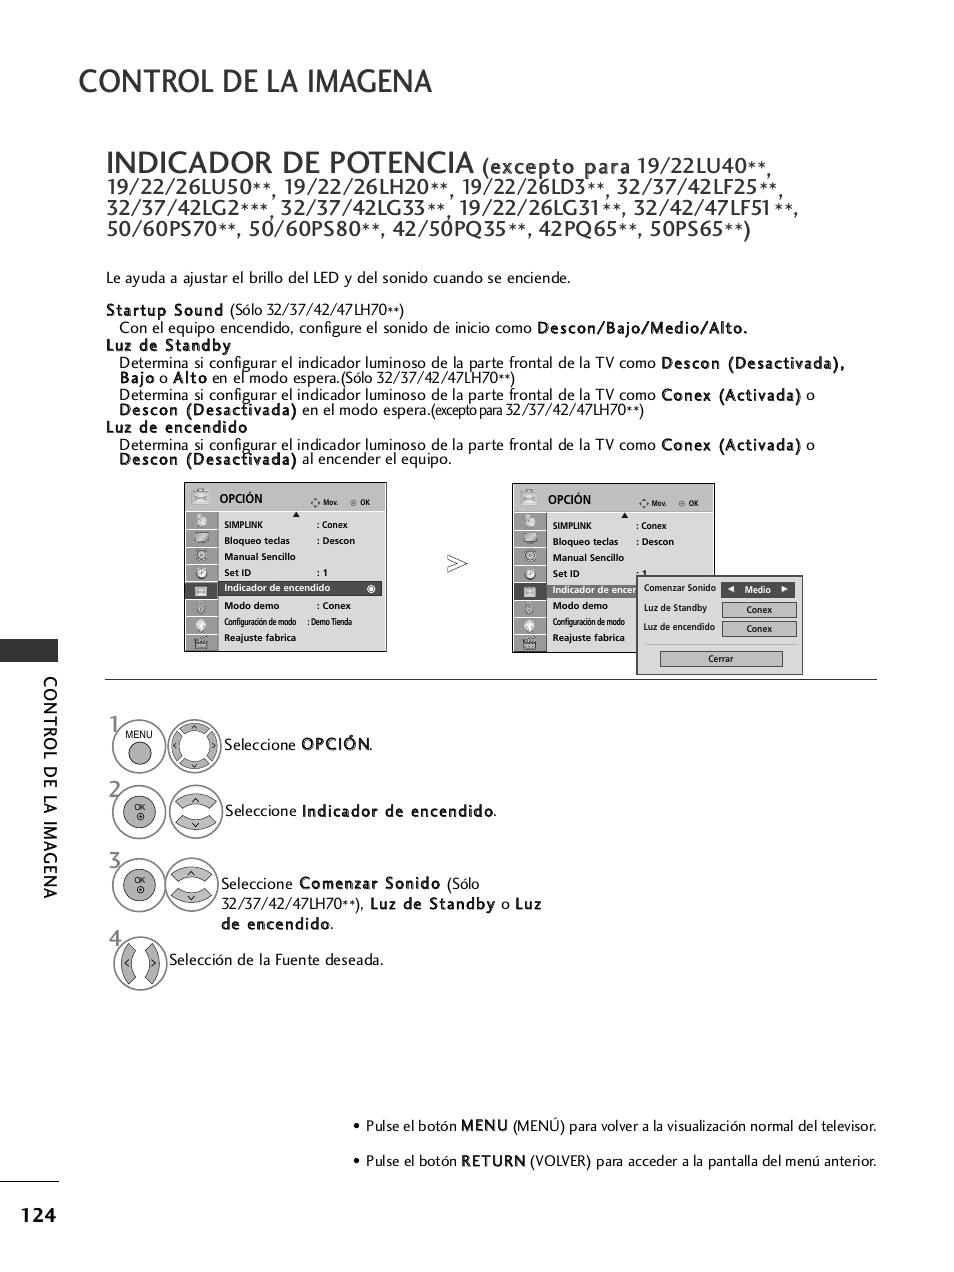 Indicador de potencia, Control de la imagena, Contr ol de la ima gena | LG 32LH40 Manual del usuario | Página 126 / 180